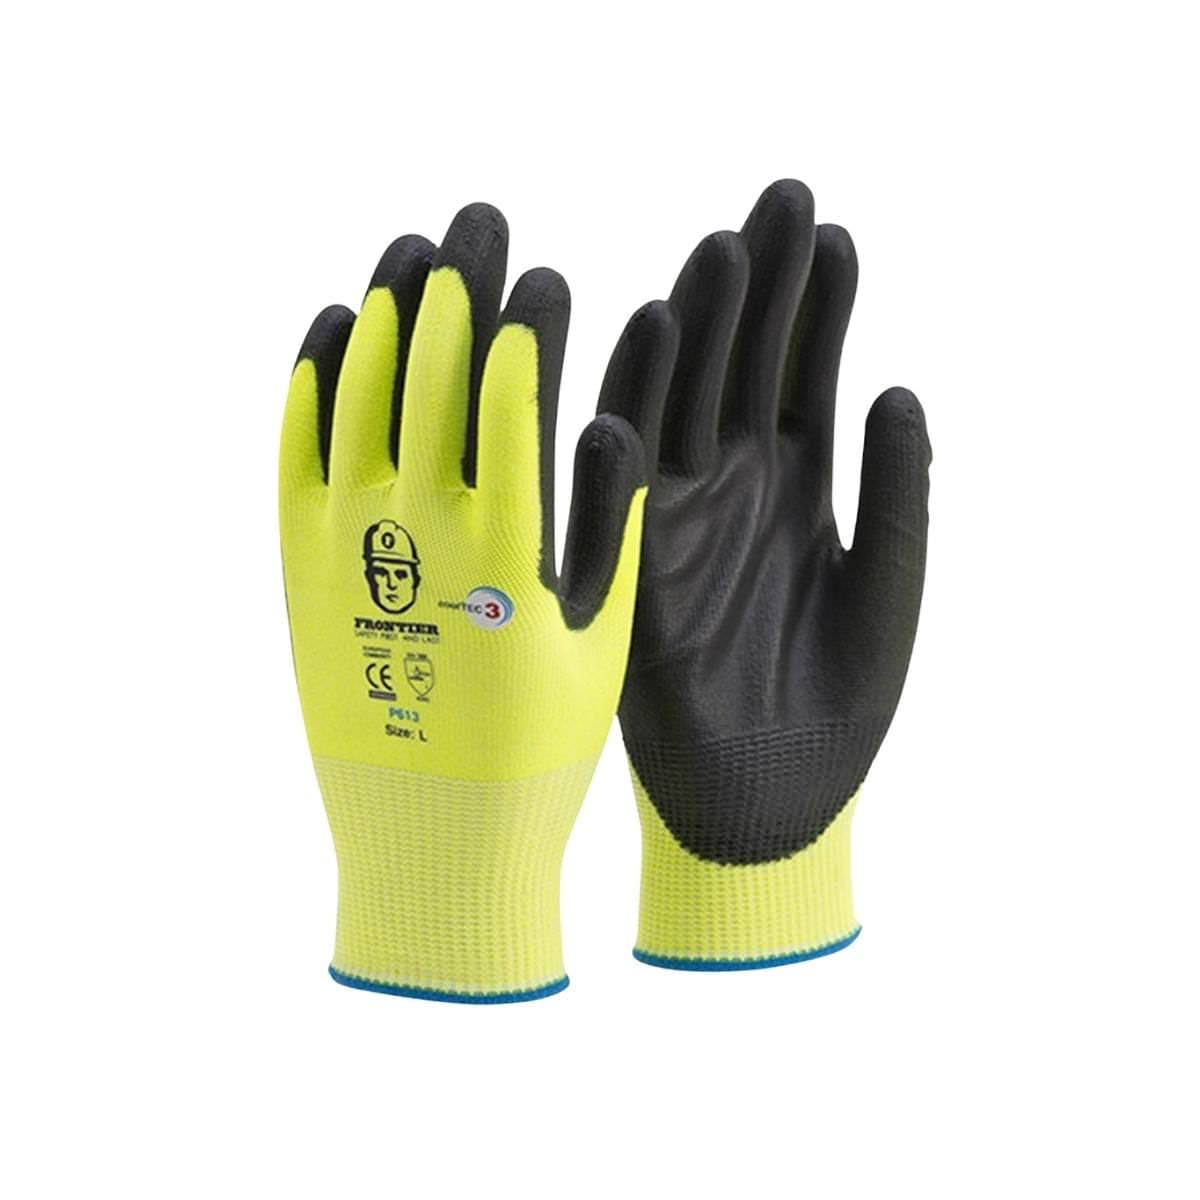 Premium Defense 7007-26 Men's Cut Resistant Glove, Gray, Medium